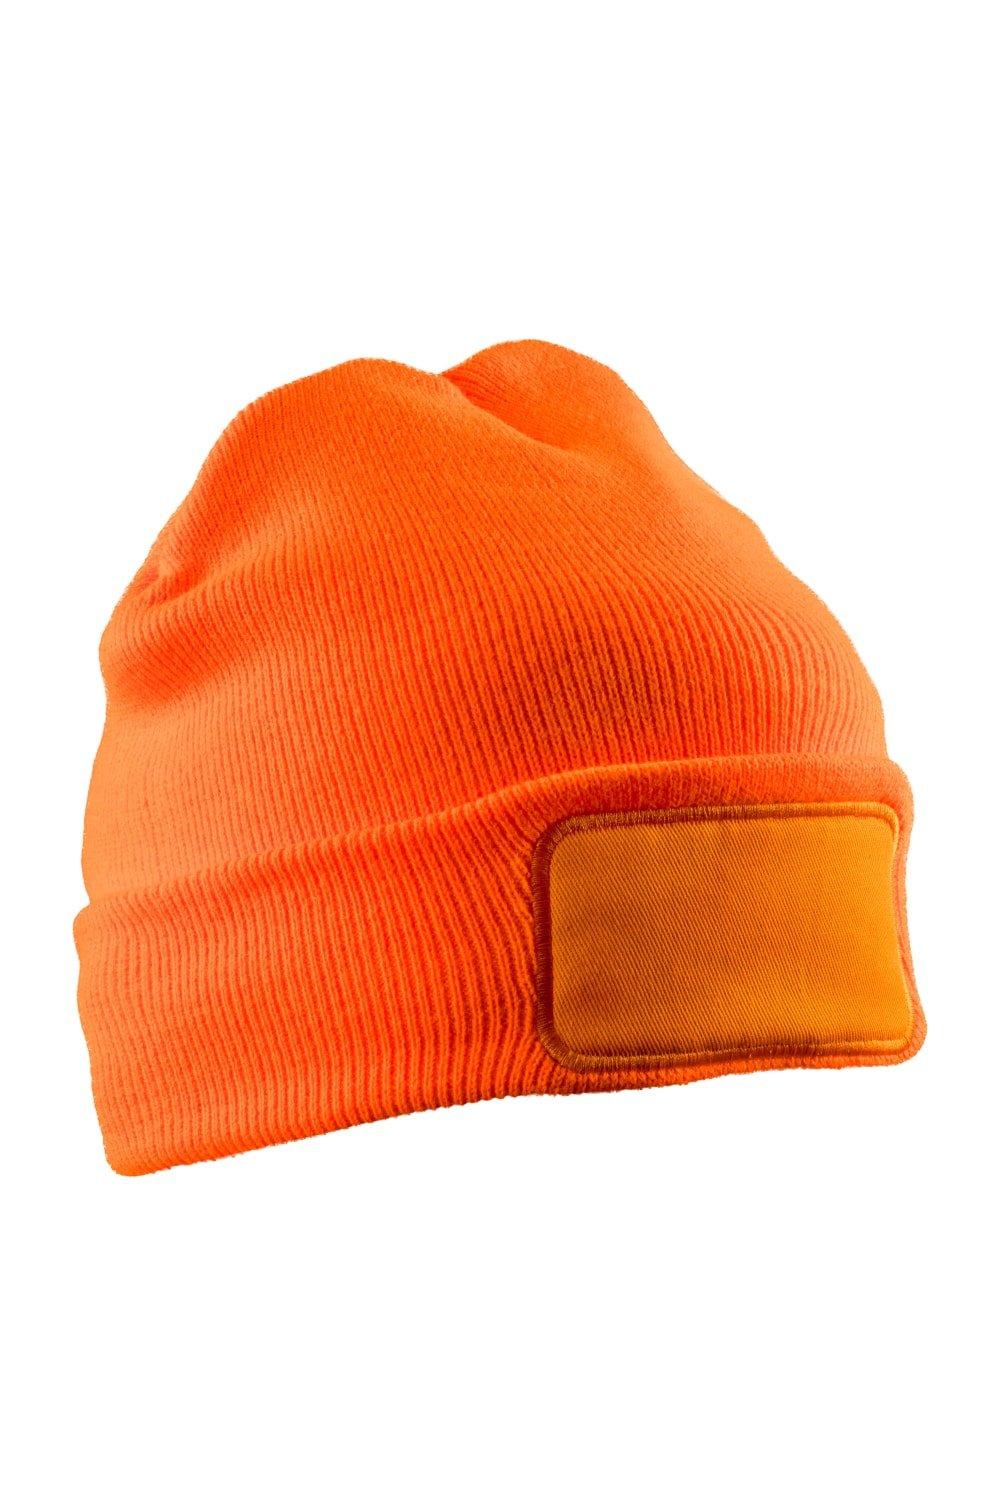 Зимняя шапка Thinsulate для печати Result, оранжевый перчатки трикотажные акрил цвет оранжевый двойная манжета россия сибртех